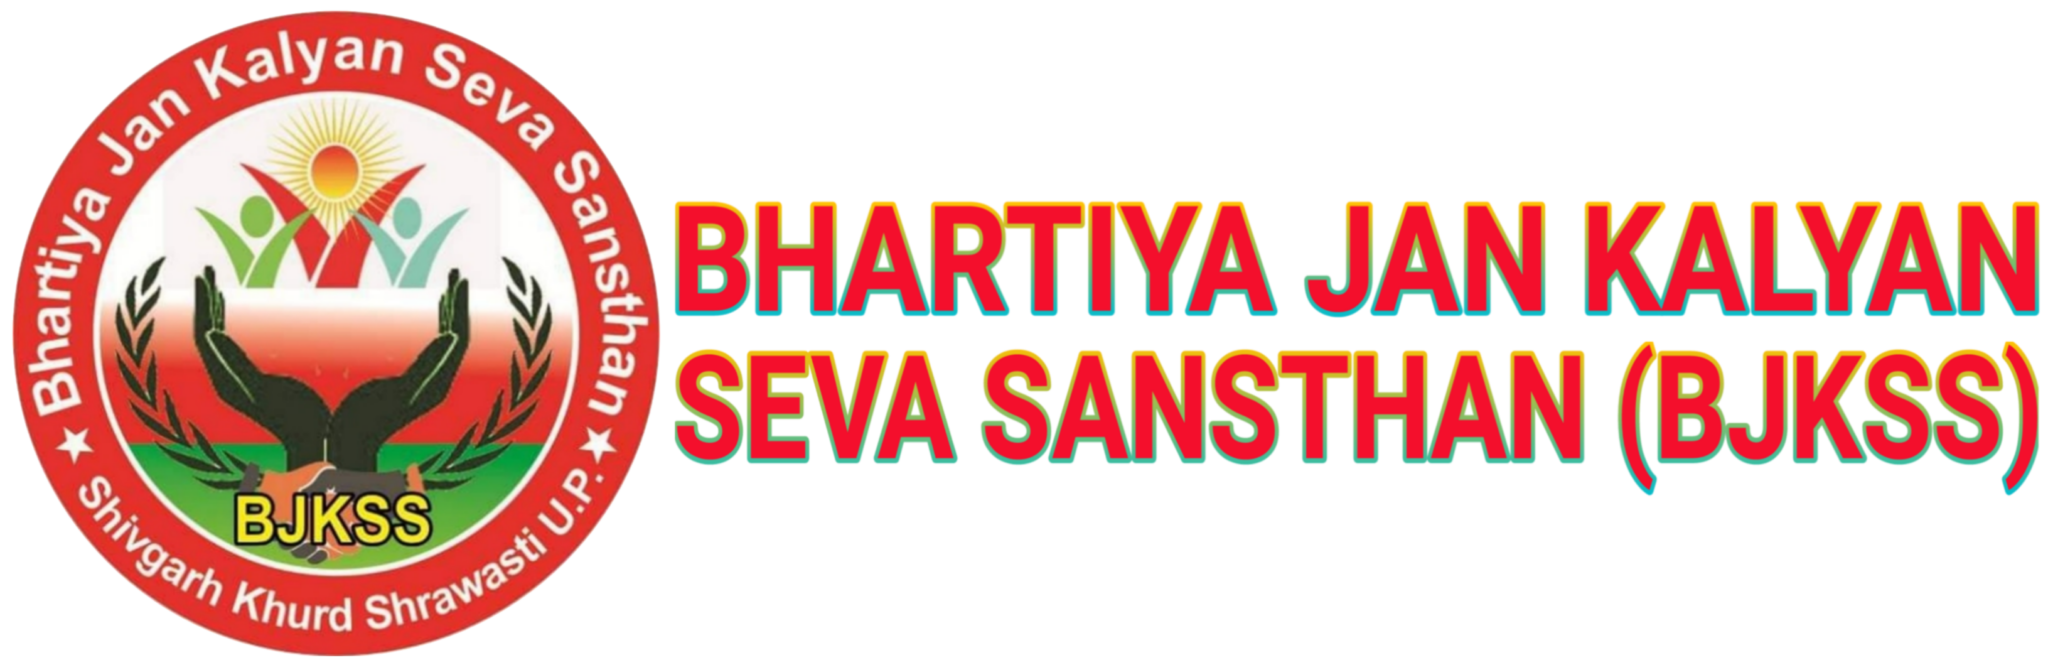 Bhartiya Jan Kalyan Seva Sansthan